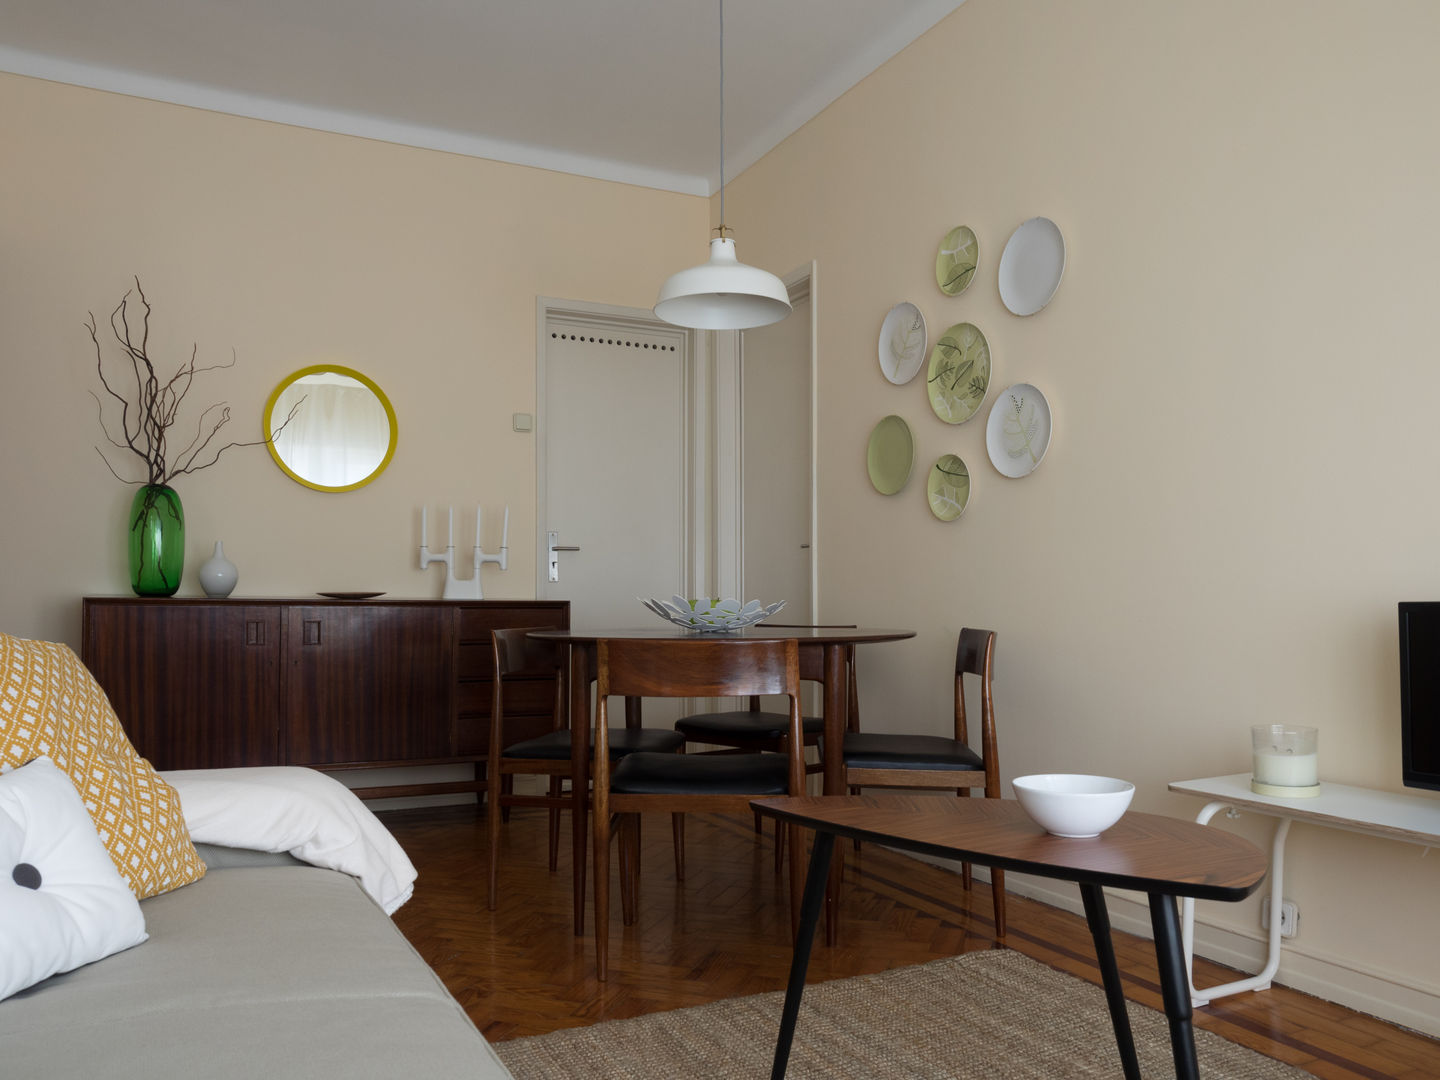 50s Apartment (Serviced) - Lisbon, MUDA Home Design MUDA Home Design Ausgefallene Esszimmer